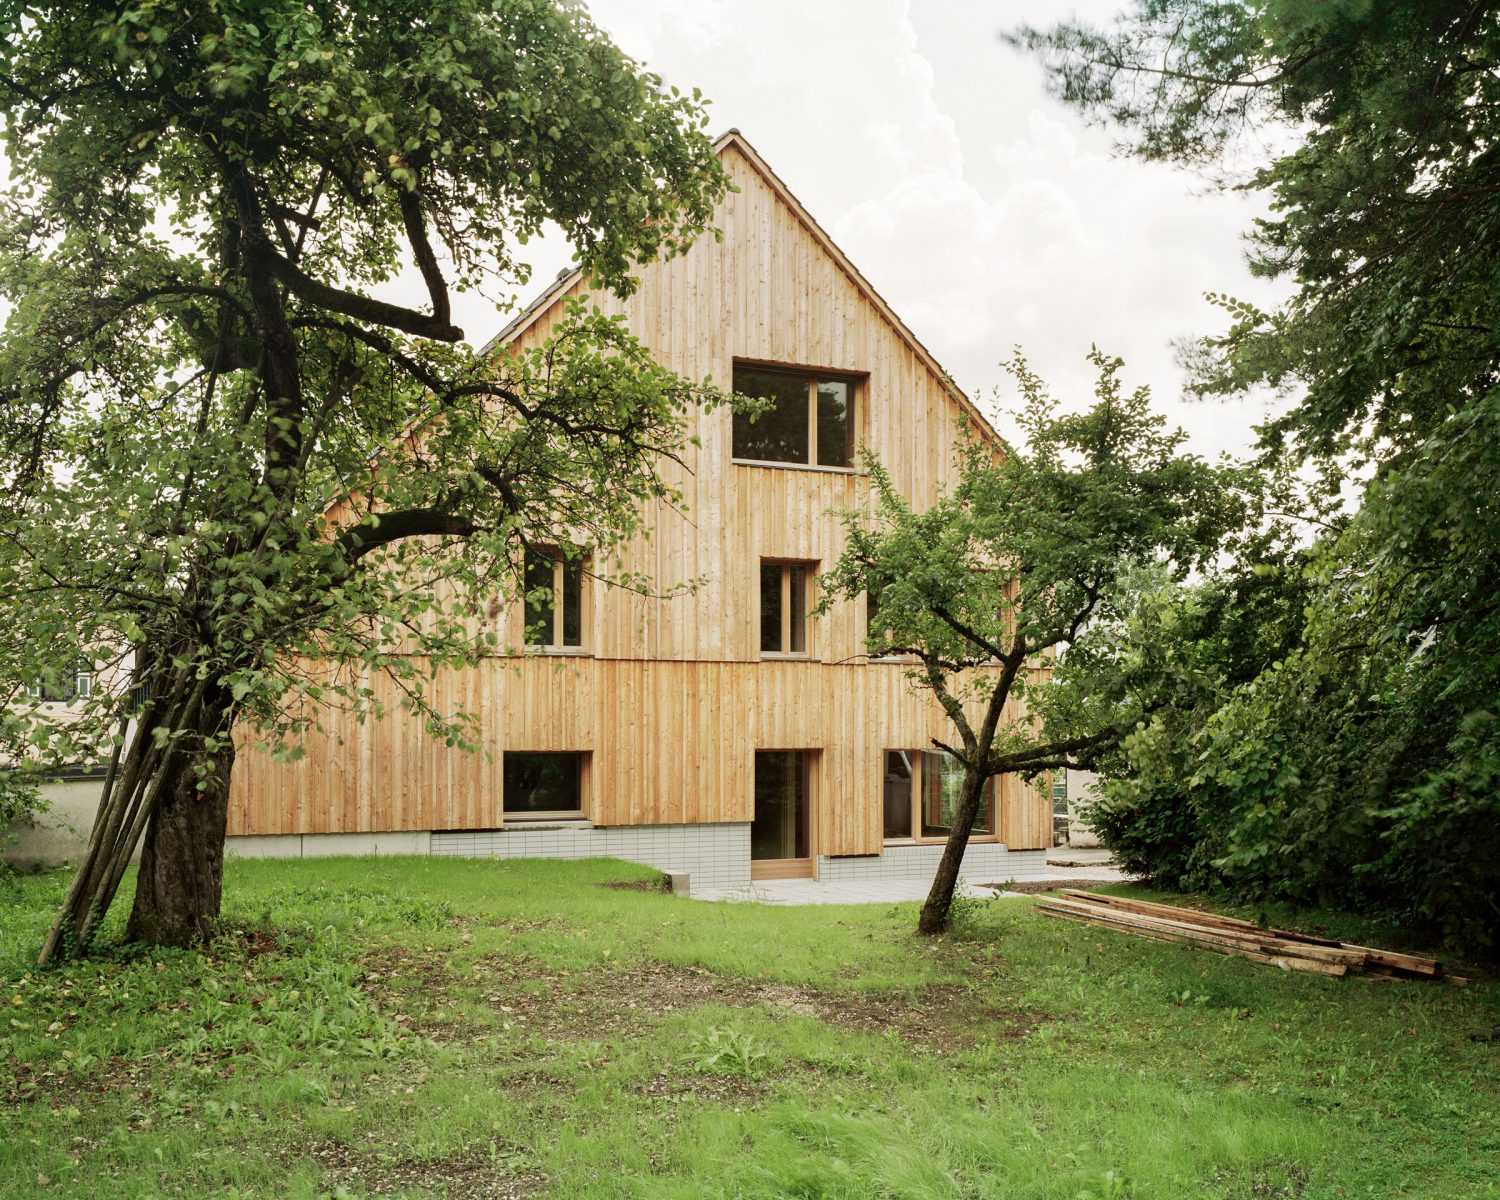 casa in legno con tetto a due spioventi